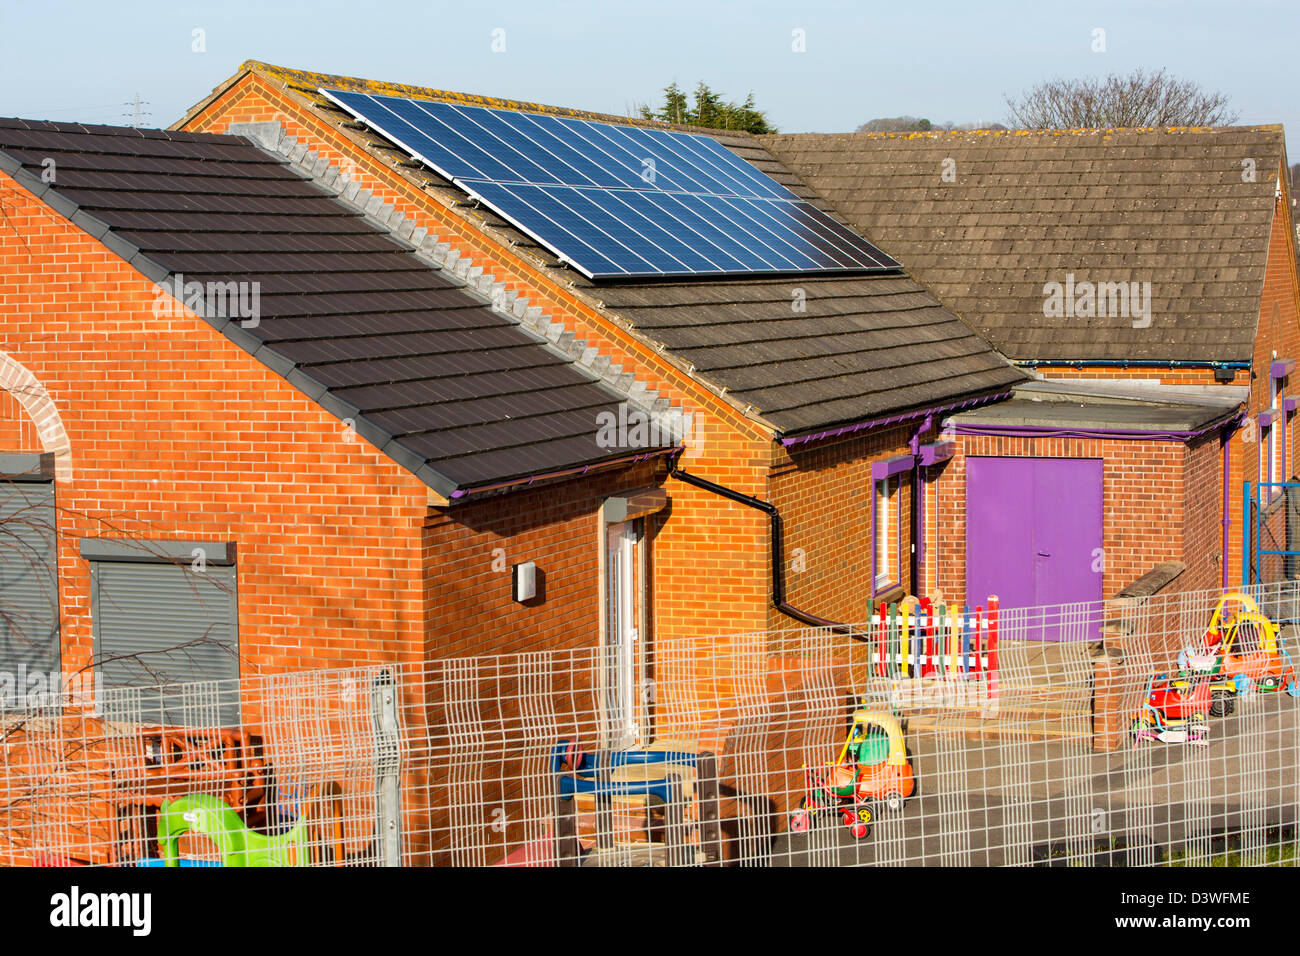 Une école maternelle de Seaton, près de Workington Cumbria UK, avec des panneaux solaires sur le toit. Banque D'Images